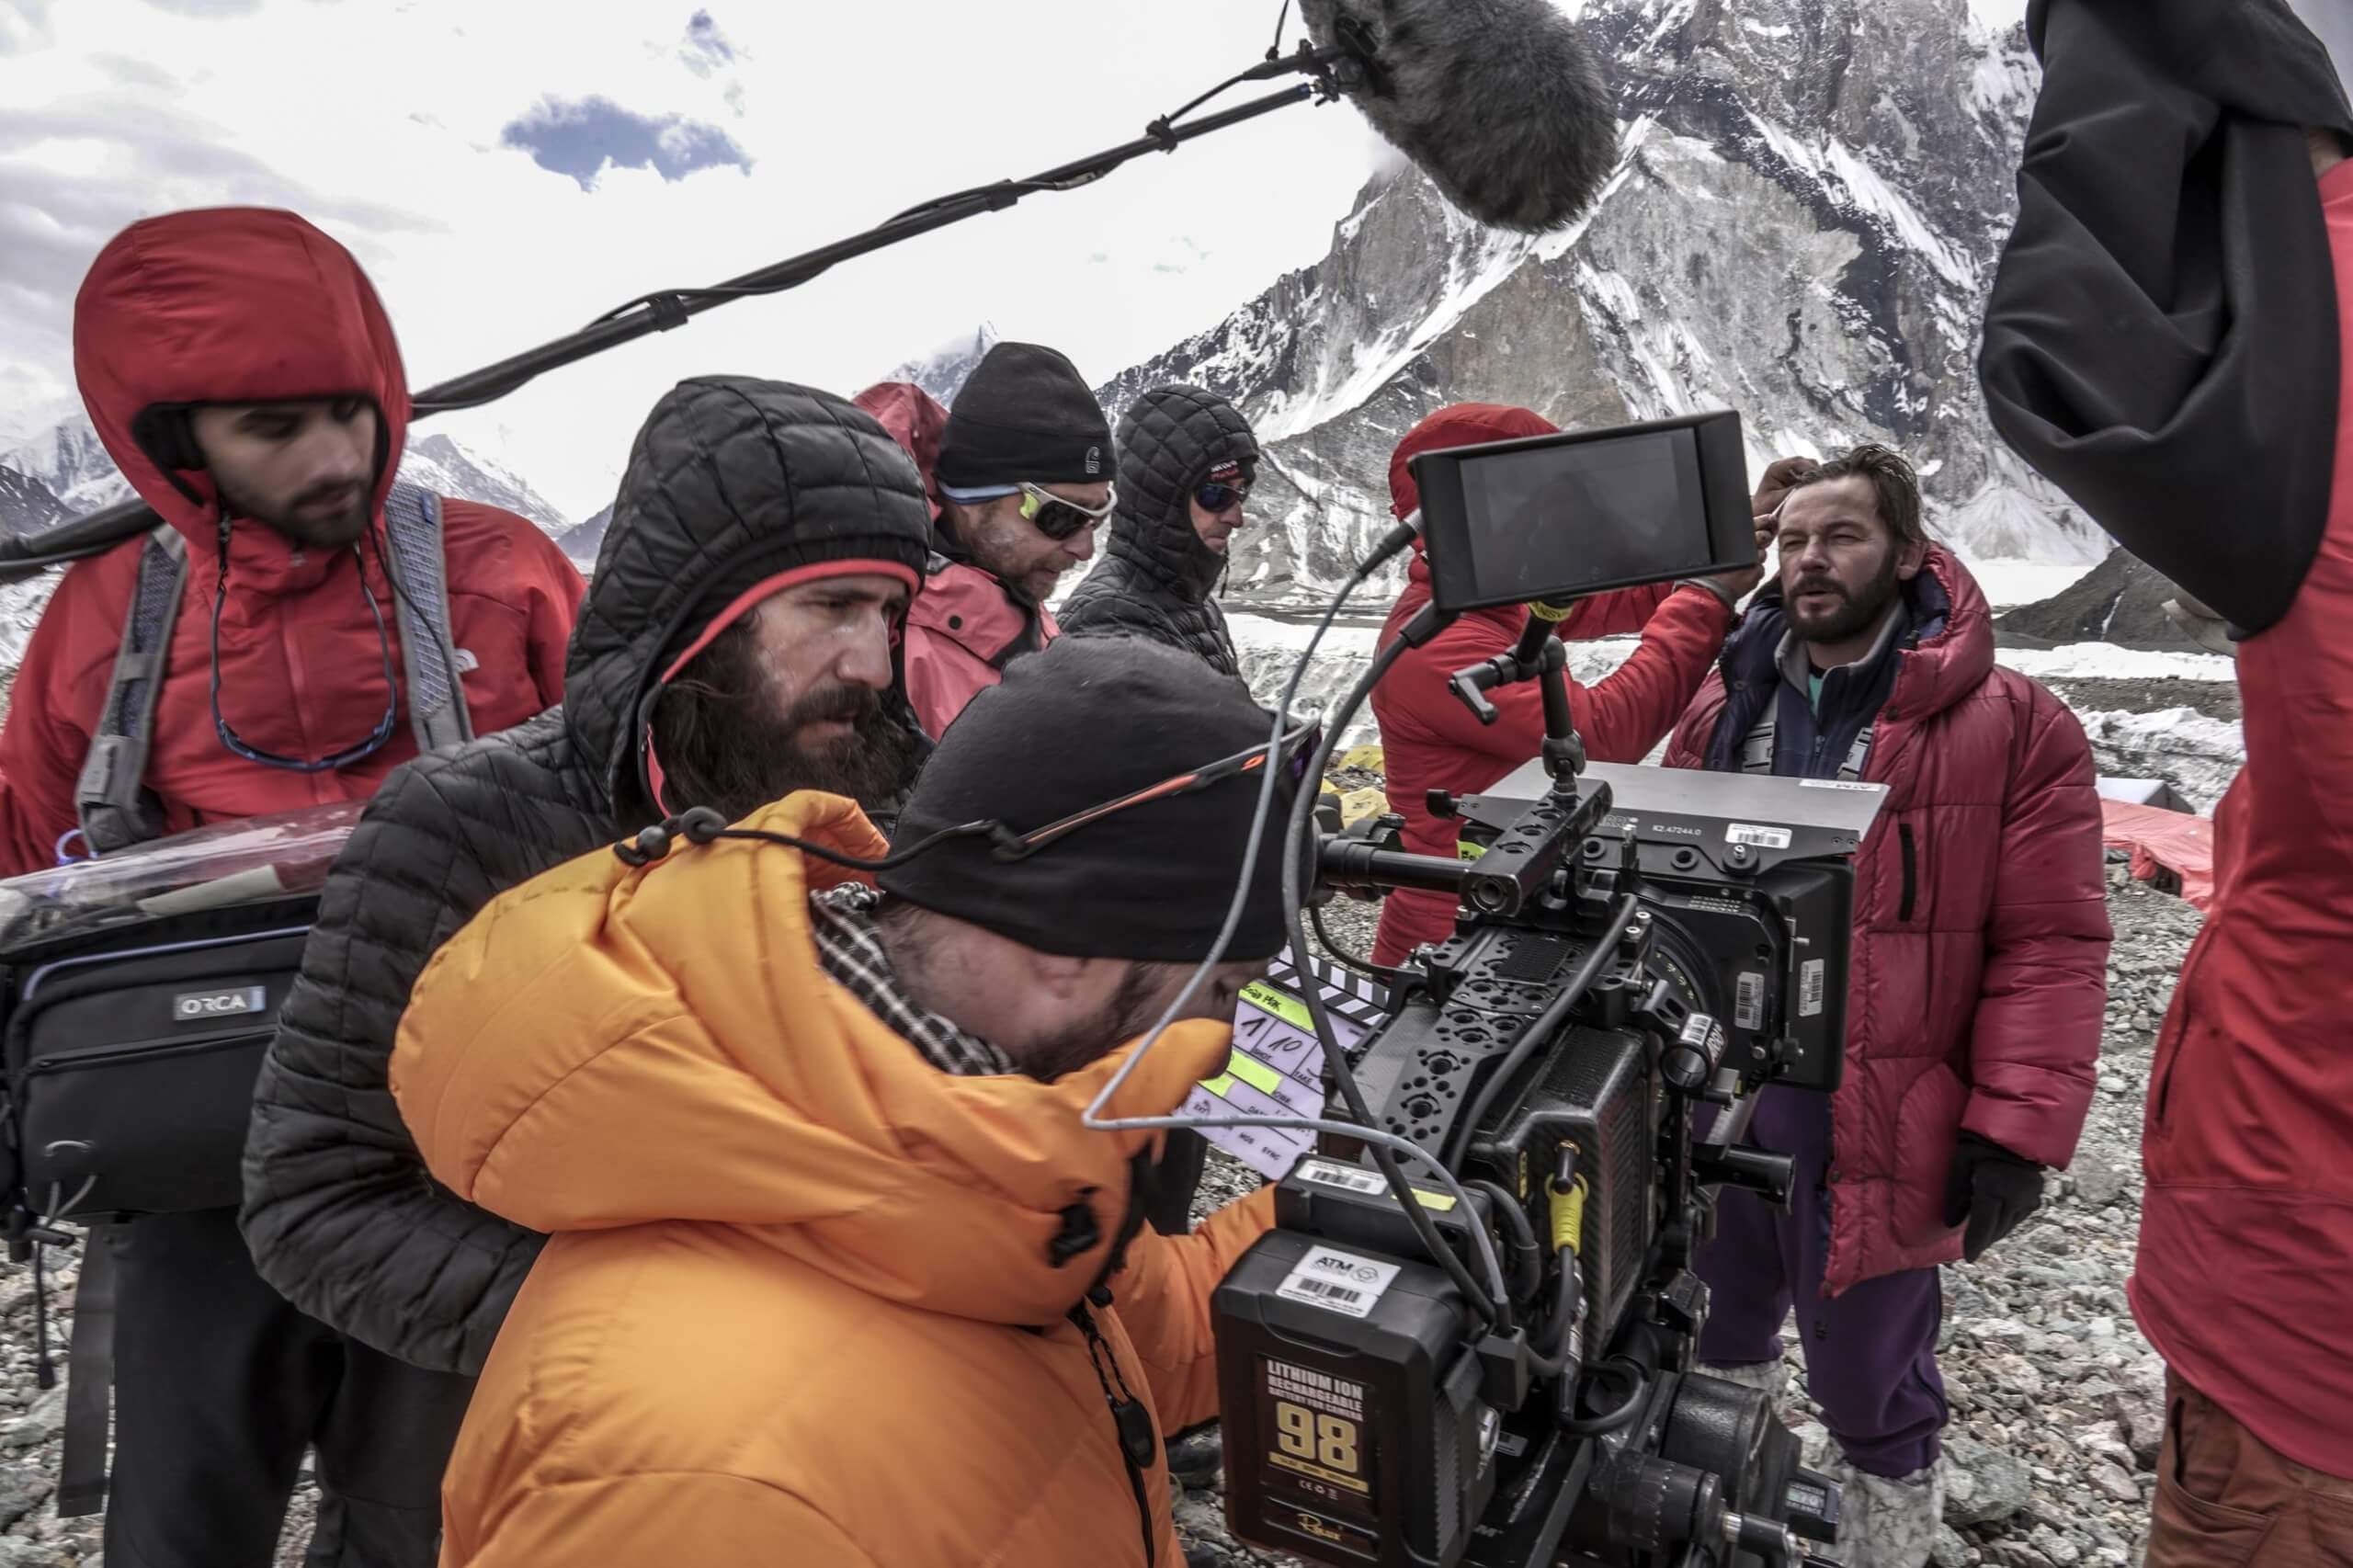 ð️ Broad Peak Film: Behind the Scenes